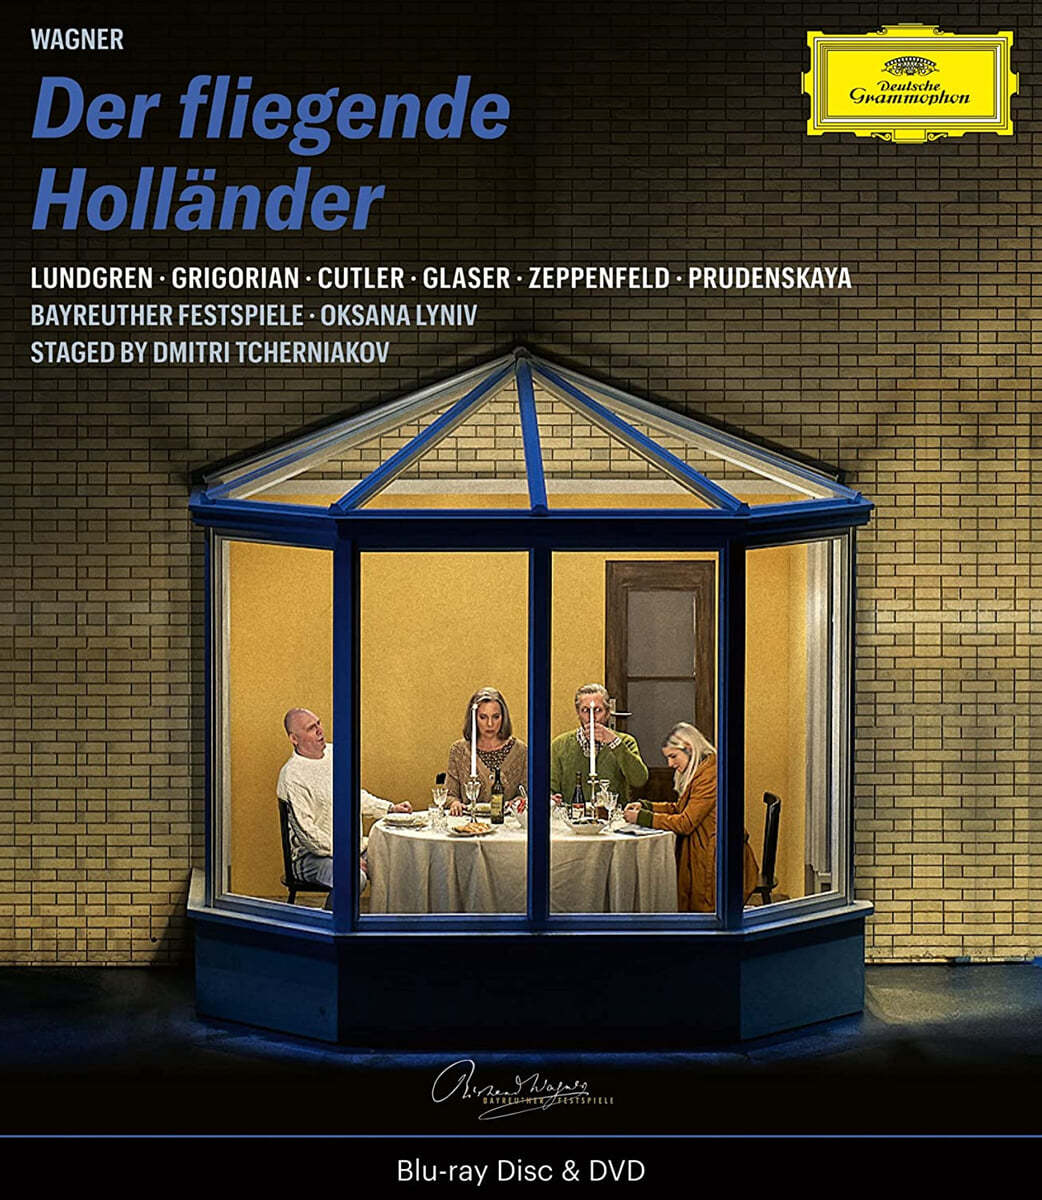 Oksana Lyniv 바그너: 방황하는 네덜란드인 (Wagner: Der Fliegende Hollander)